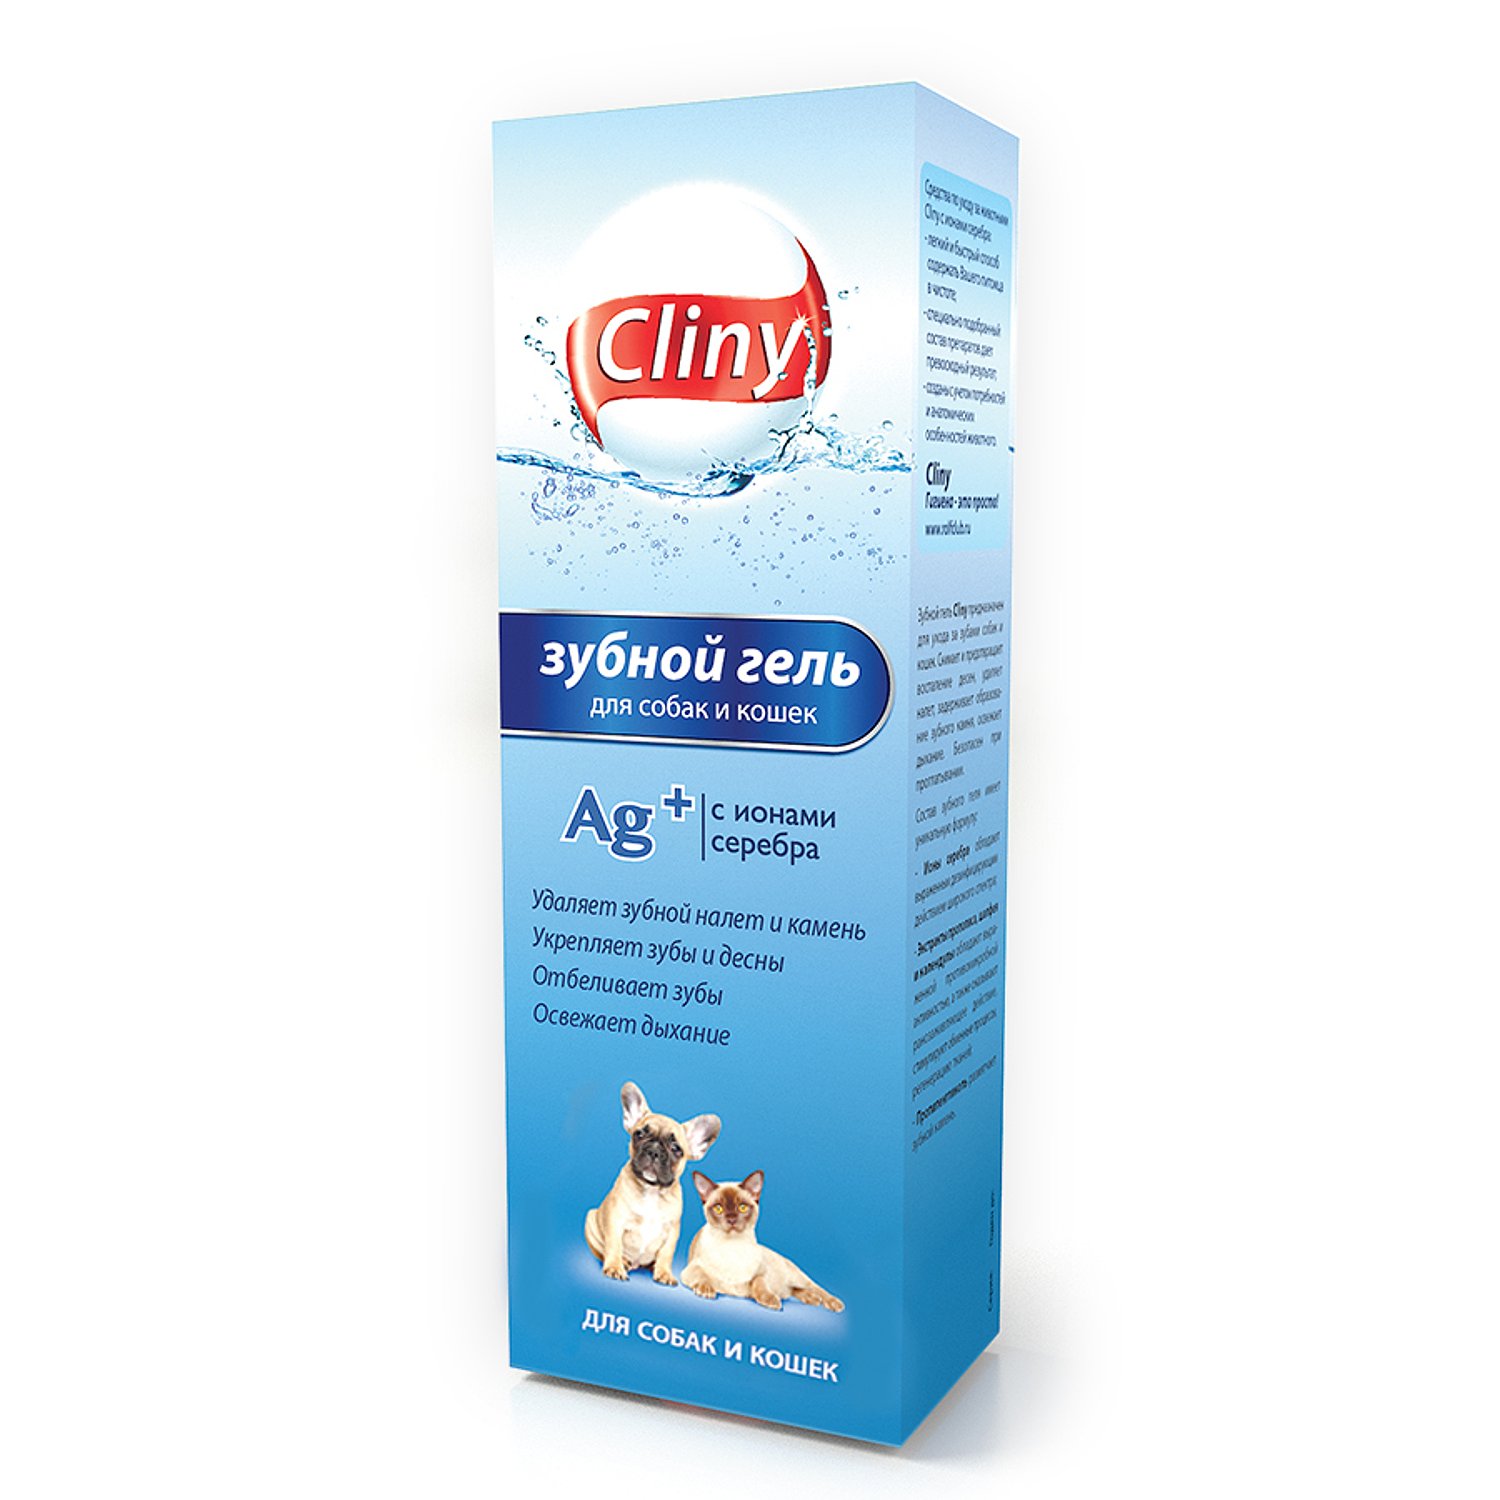 зубной гель для кошек и собак "cliny" (клини), 75 мл